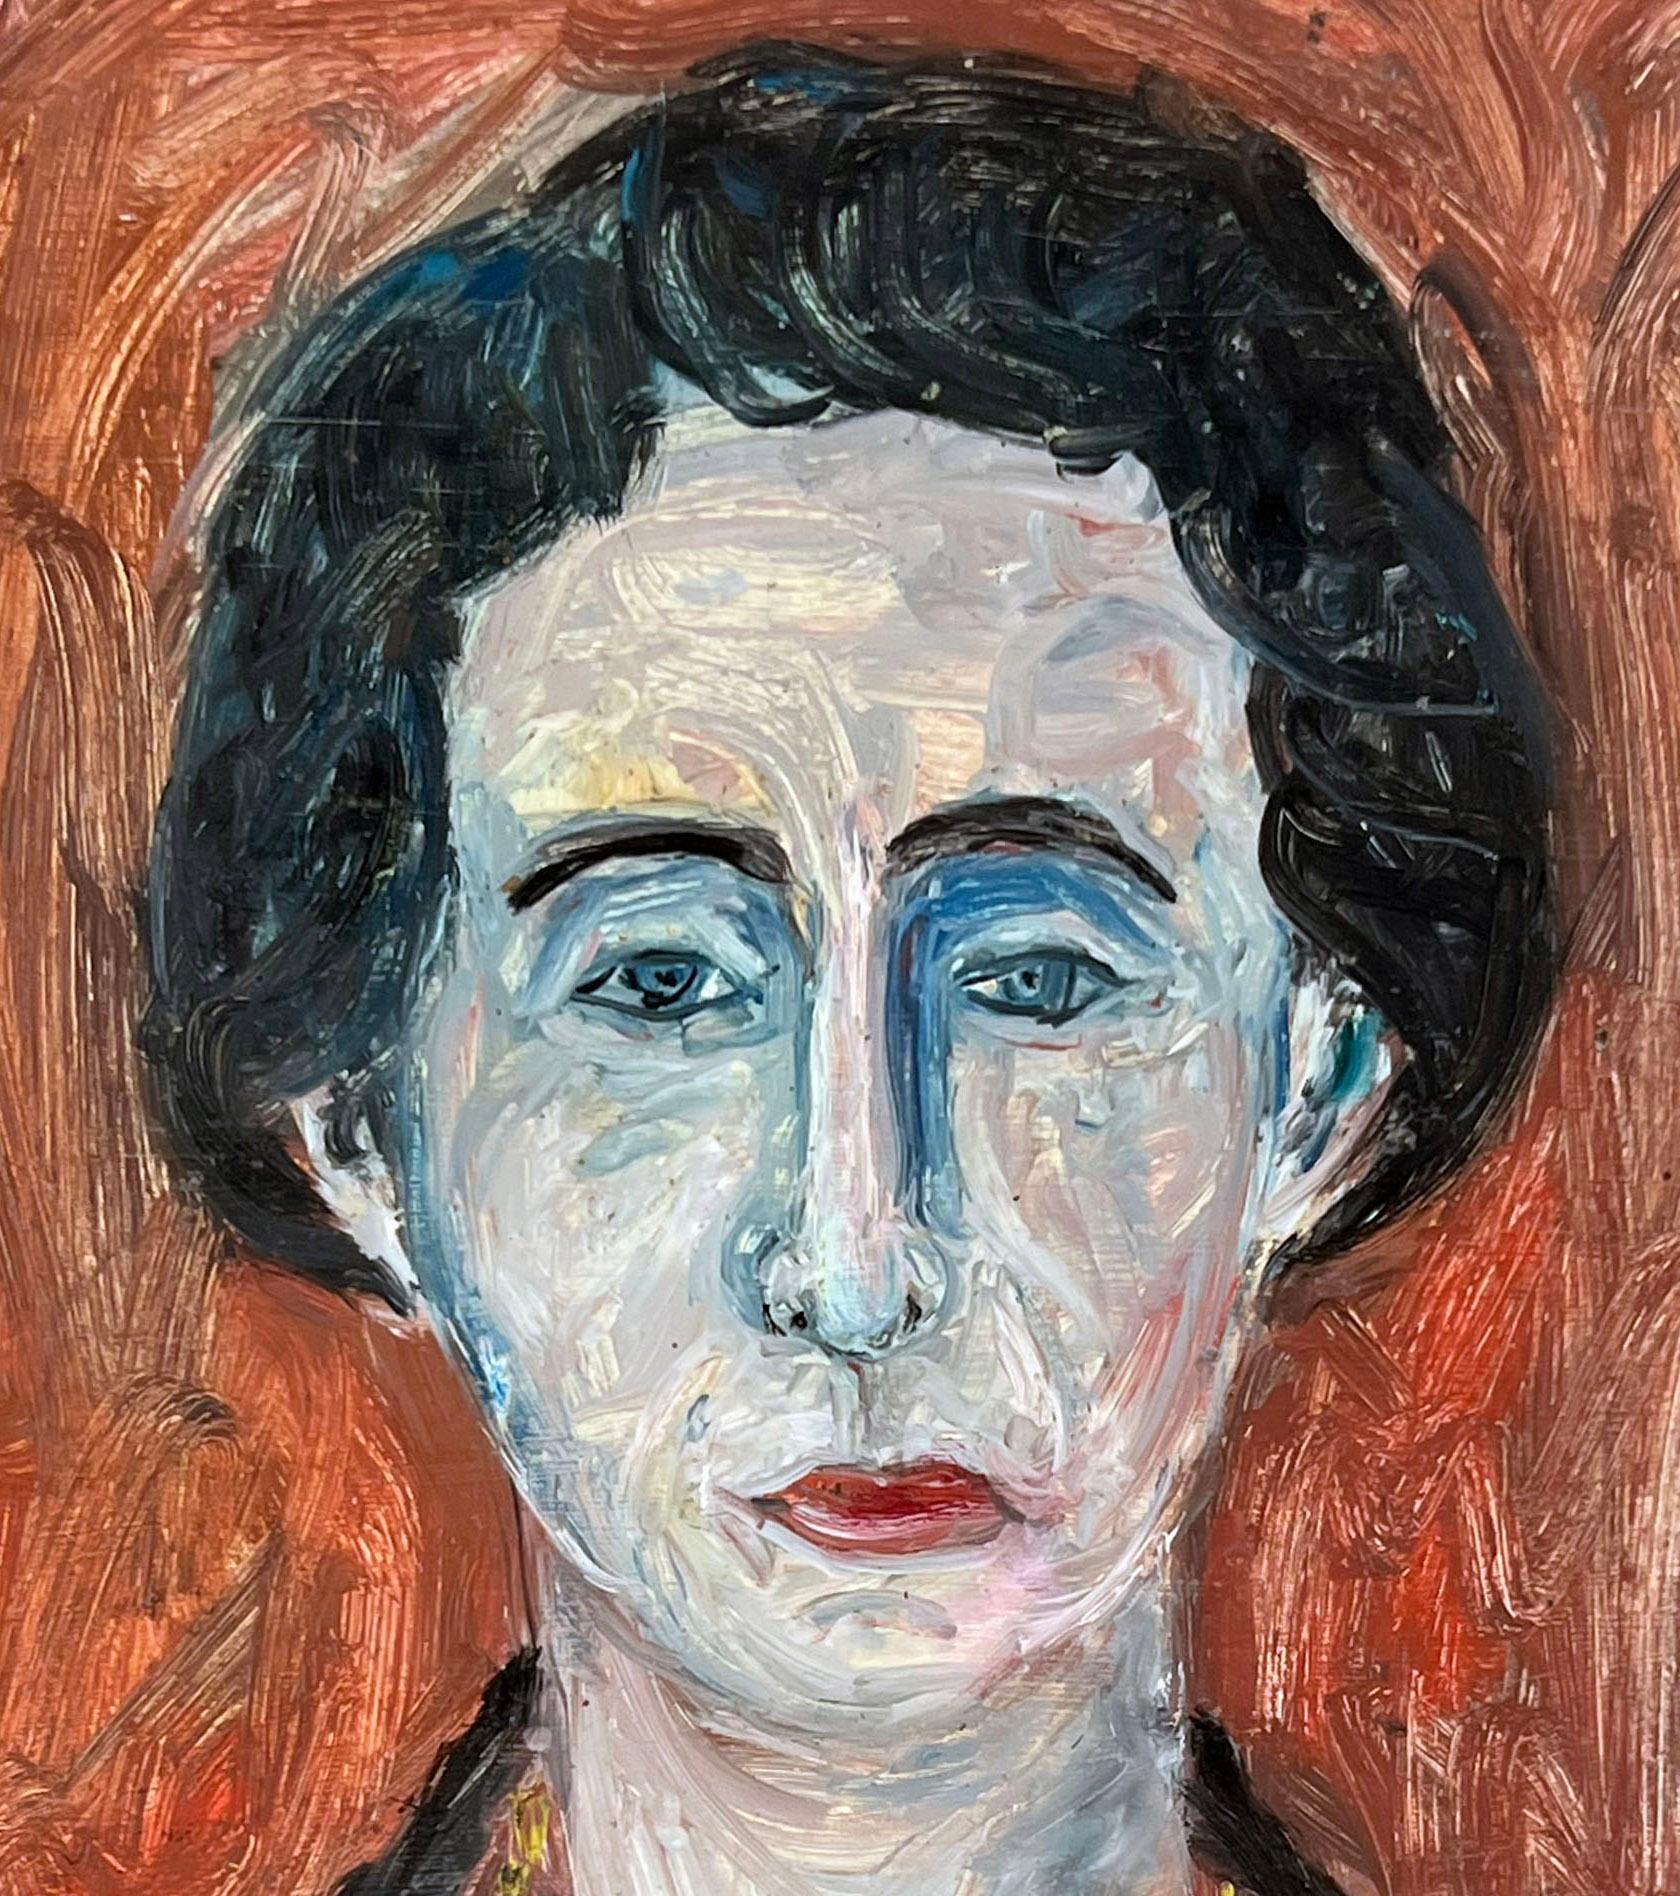 Porträt einer Frau aus der Bay Area Figurative Movement in Öl auf Künstlerkarton, 1950er Jahre

Porträt einer Frau und eines Mannes von Honora Berg (Amerikanerin, 1897-1985). Die Frau blickt den Betrachter direkt an und hat einen neutralen Ausdruck.